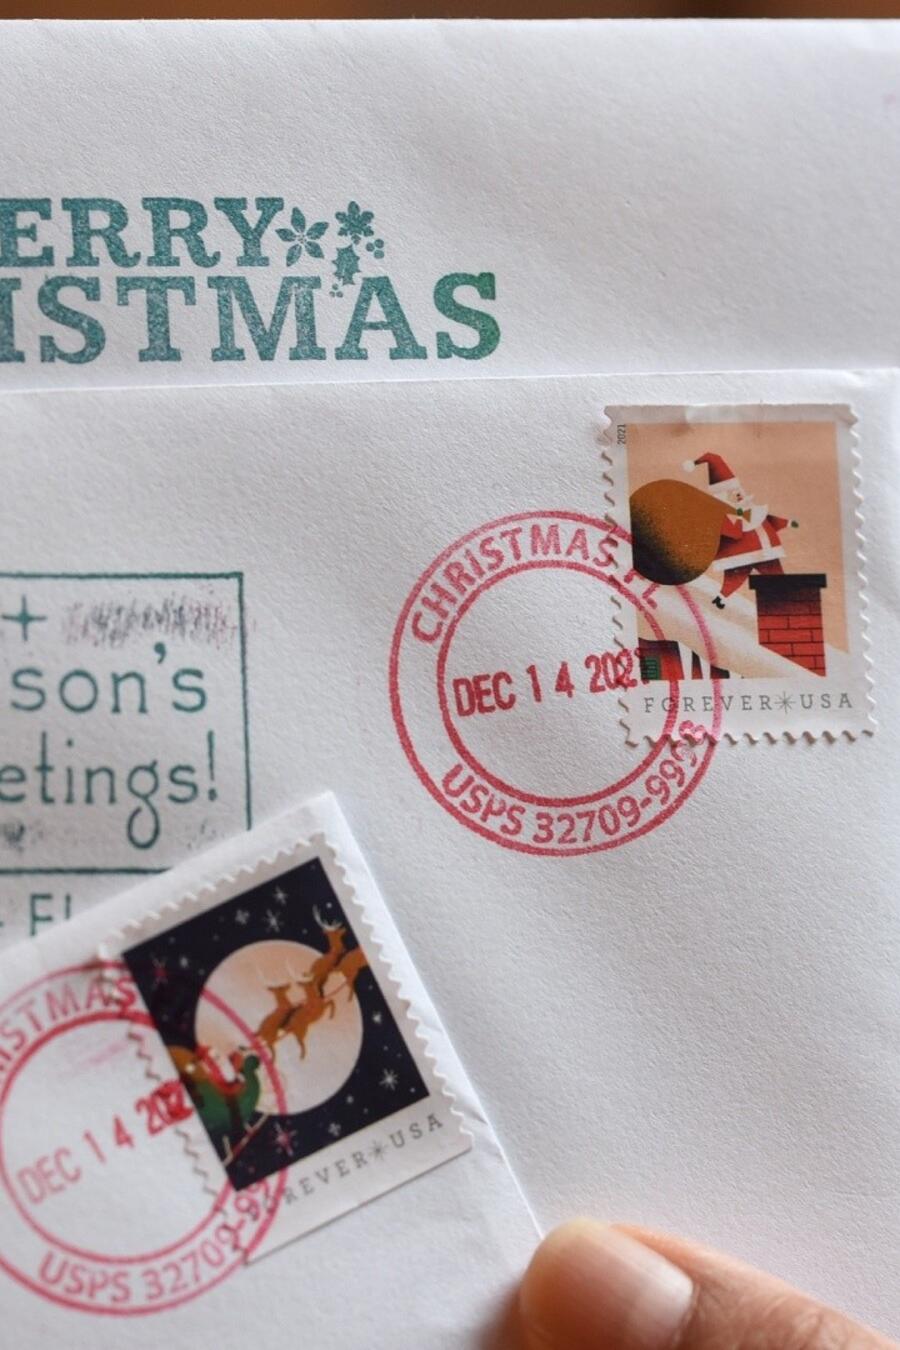 sellos postales.jpg